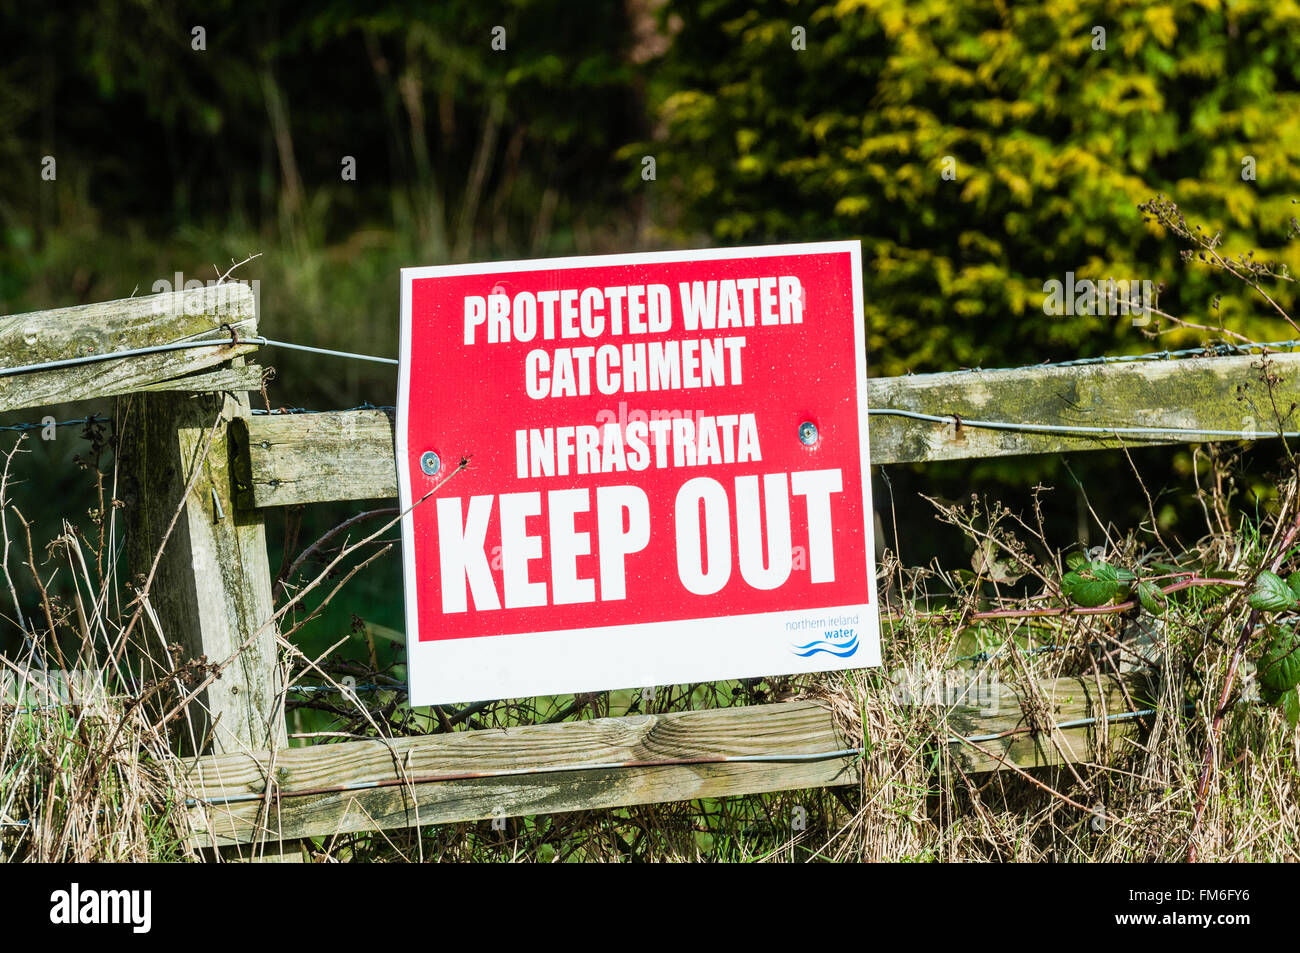 Zeichen von Demonstranten Warnung Infrastrata zu halten aus öffentlichen Flächen errichtet und Wassereinzugsgebiet geschützt. Stockfoto